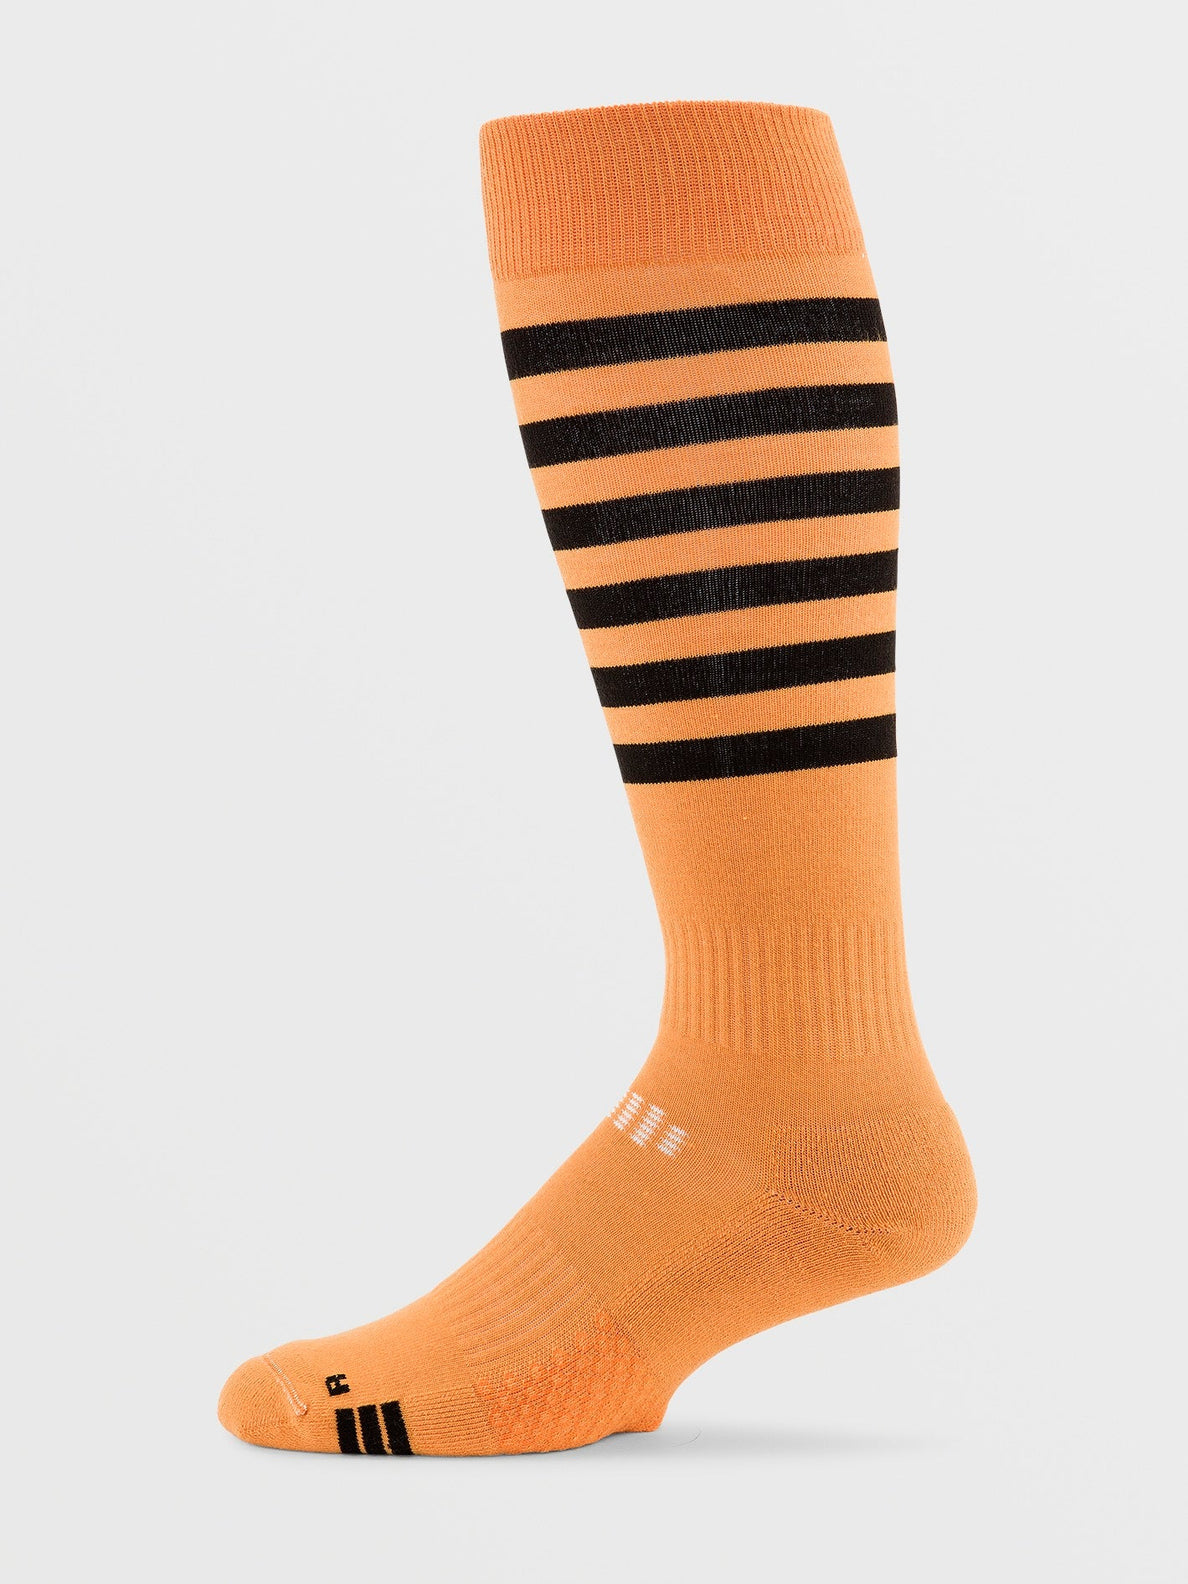 Kootney Socks - GOLD (J6352400_GLD) [1]